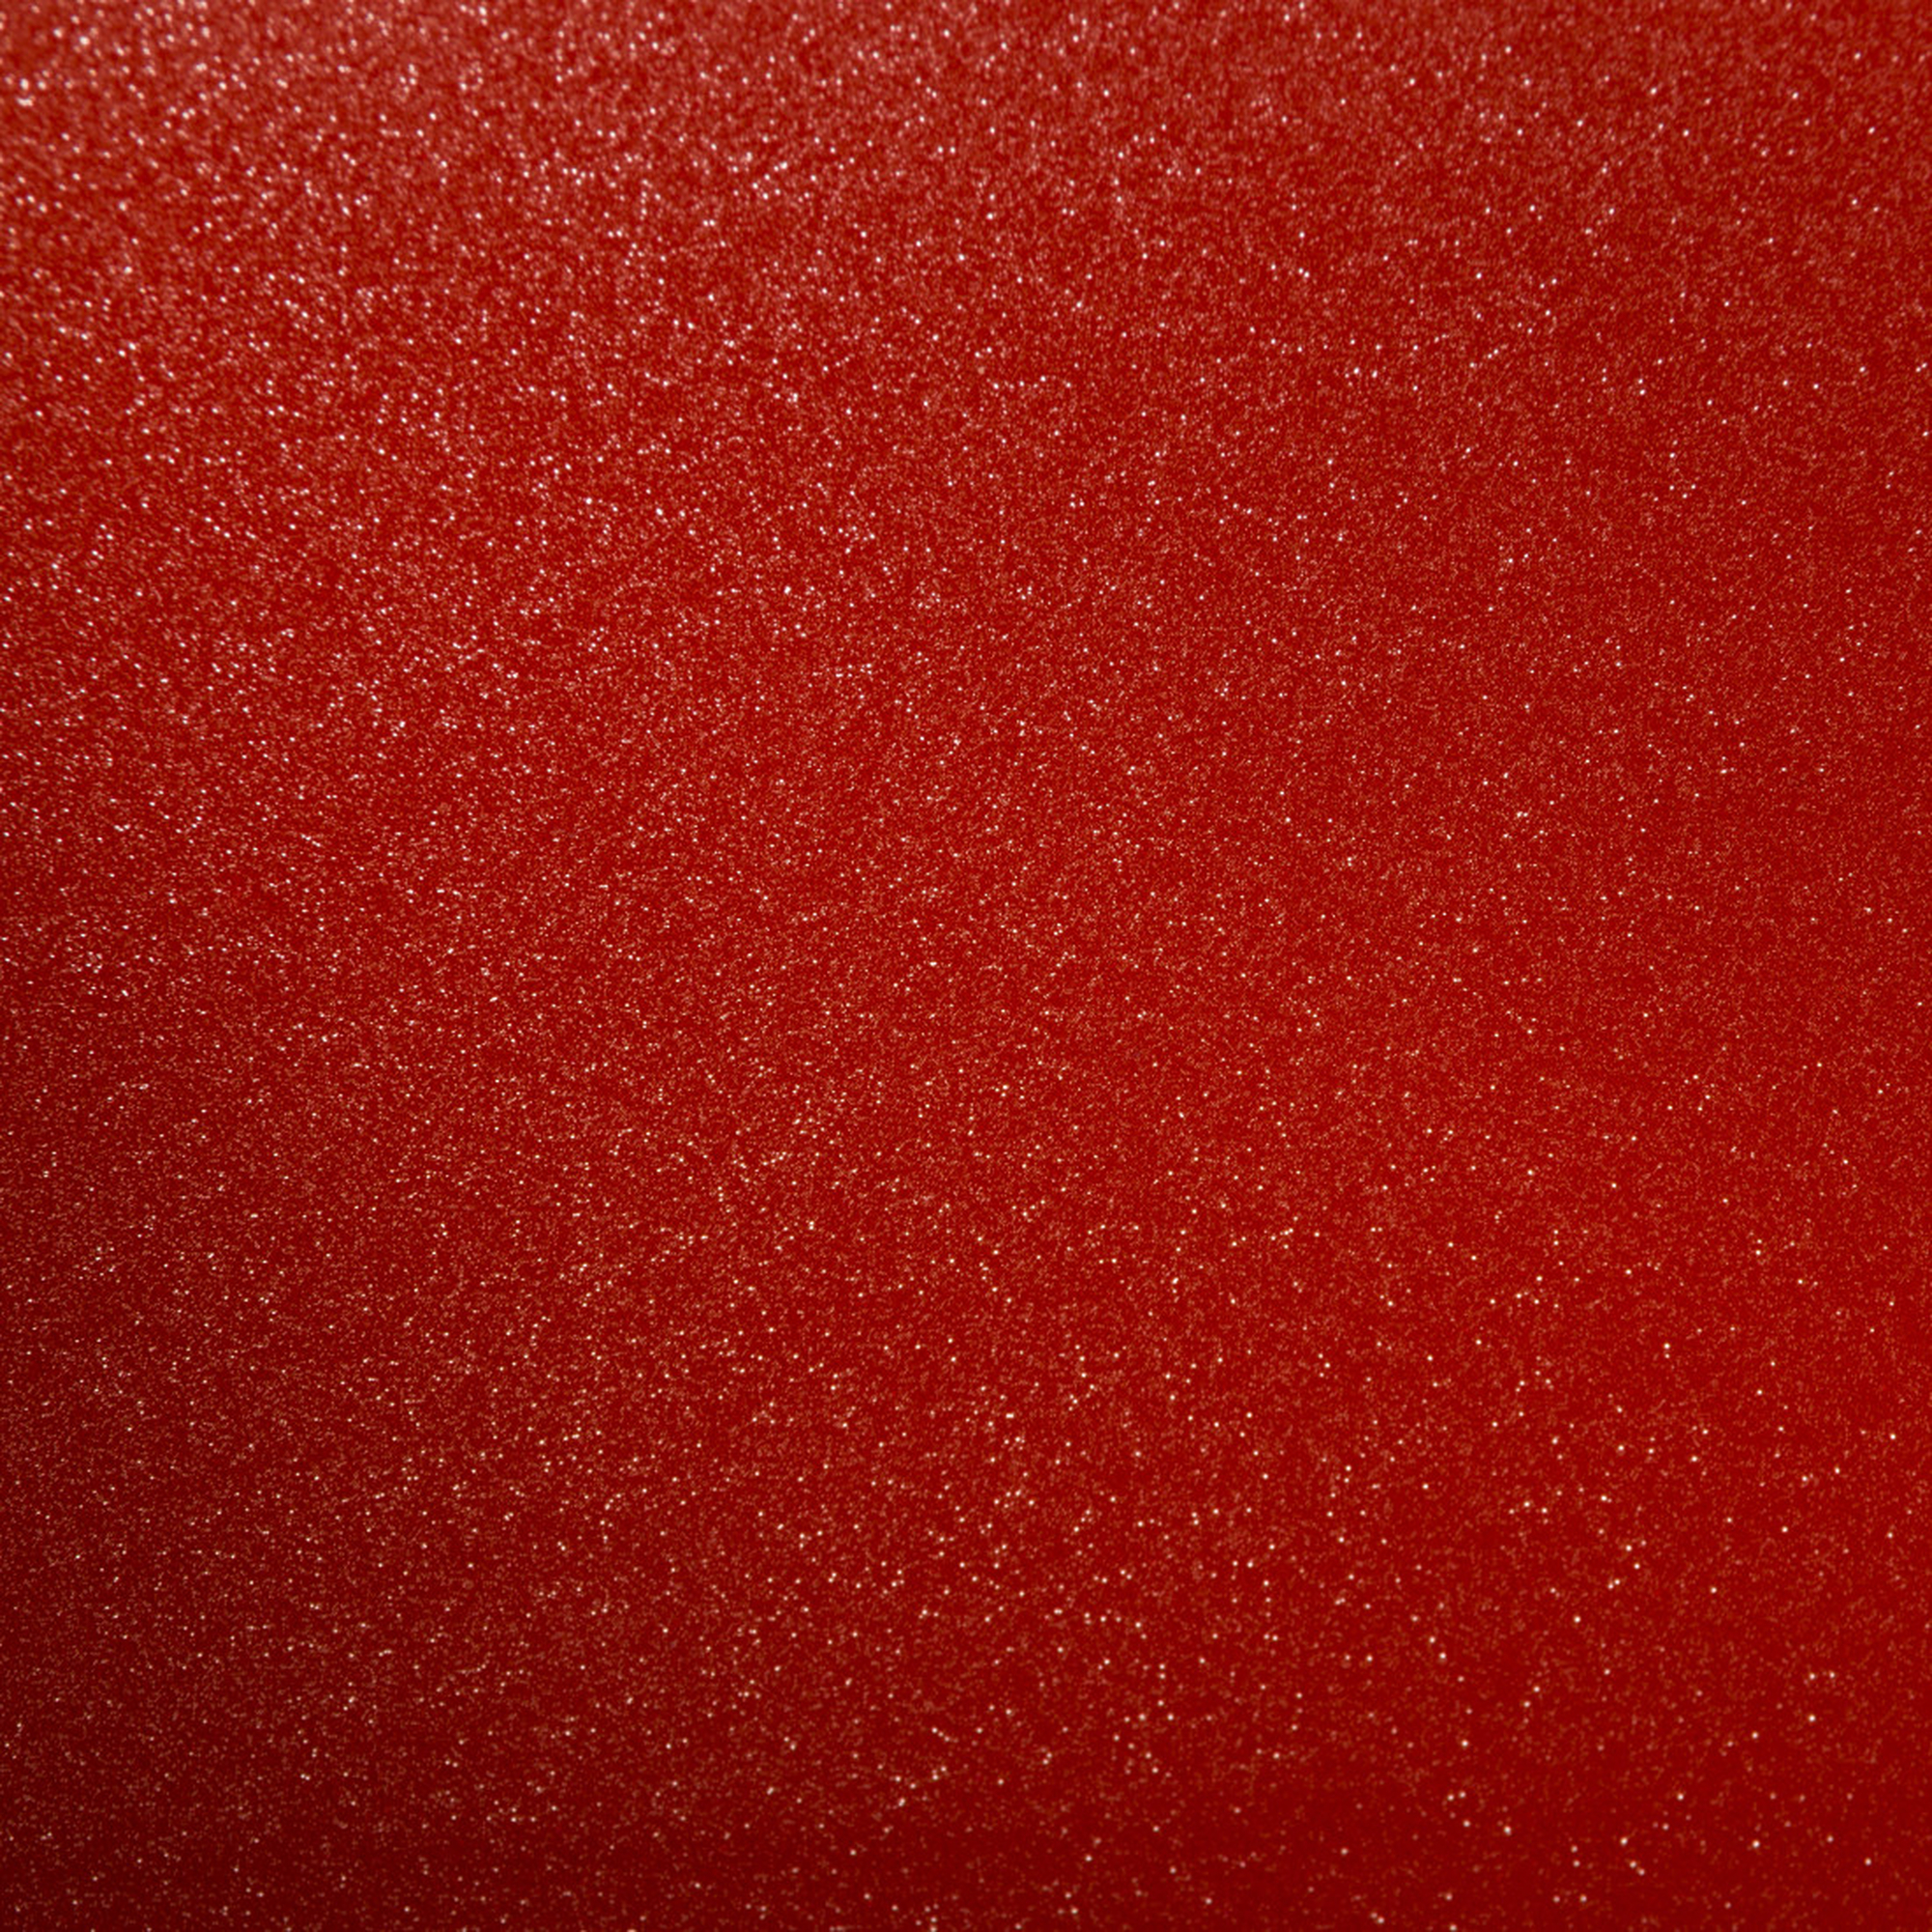 Smart SHIMMER Red SHEET Vinylfolie Schimmer 1 RED SVP 2008616 CRICUT